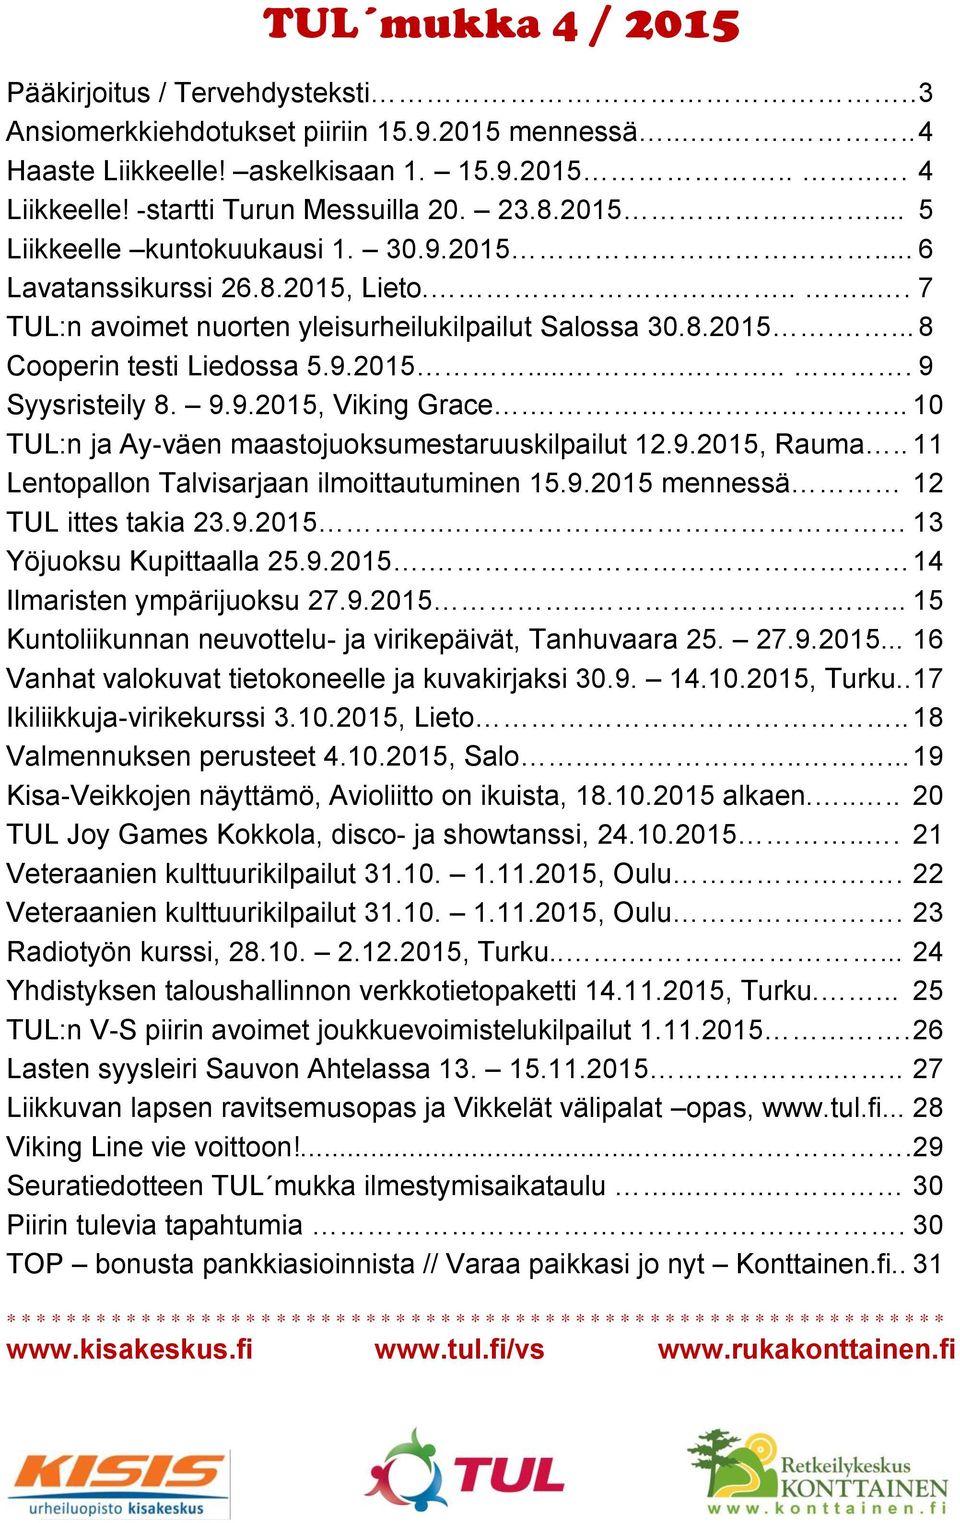 9.2015....... 9 Syysristeily 8. 9.9.2015, Viking Grace... 10 TUL:n ja Ay-väen maastojuoksumestaruuskilpailut 12.9.2015, Rauma.. 11 Lentopallon Talvisarjaan ilmoittautuminen 15.9.2015 mennessä 12 TUL ittes takia 23.